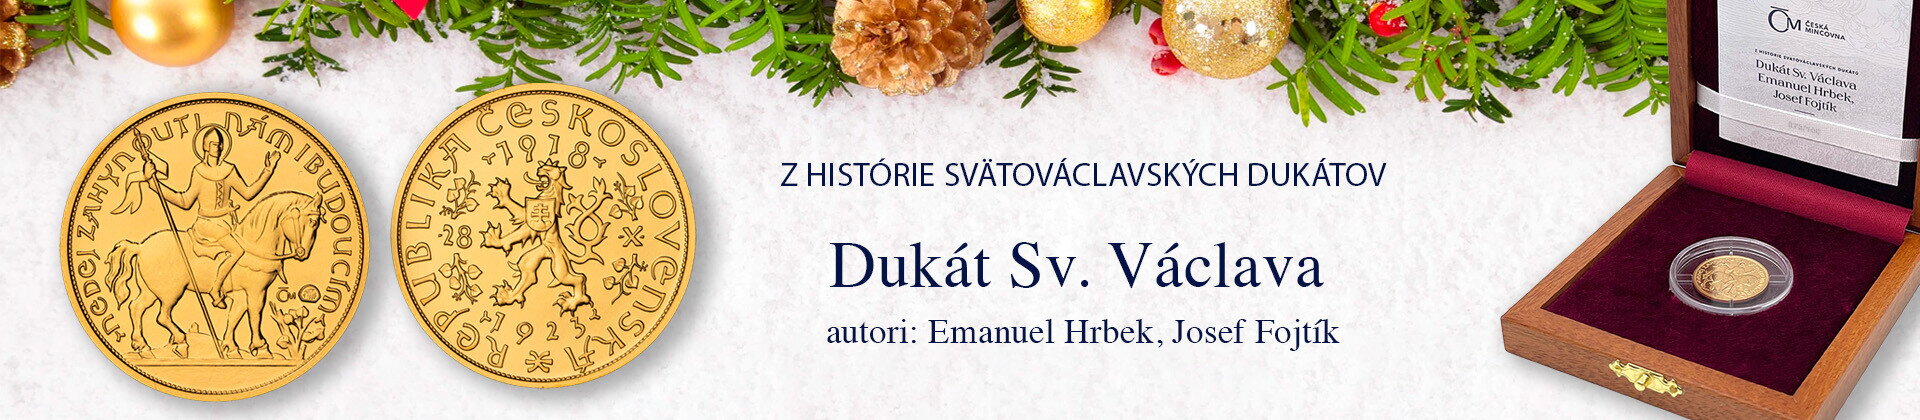 Dukát Sv. Václava - Emanuel Hrbek, Josef Fojtík